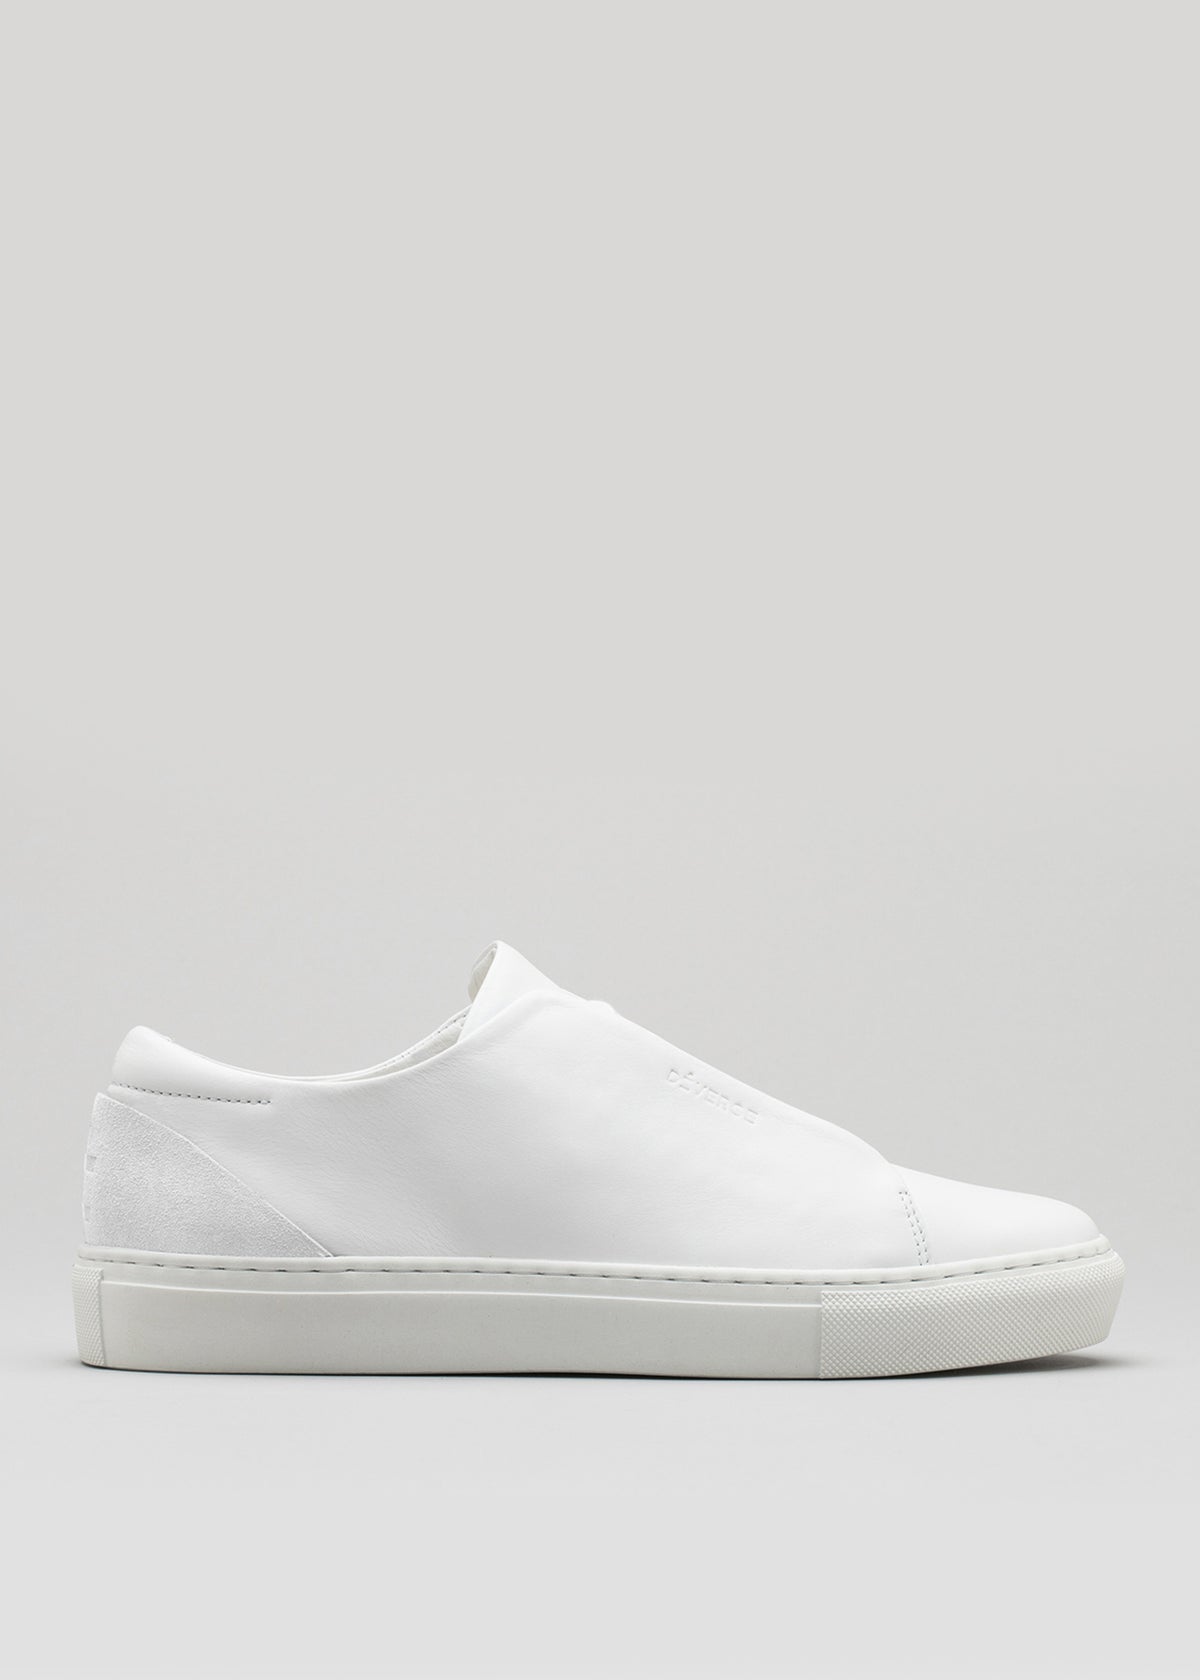 cuero premium blanco bajo sneakers en diseño limpio sideview